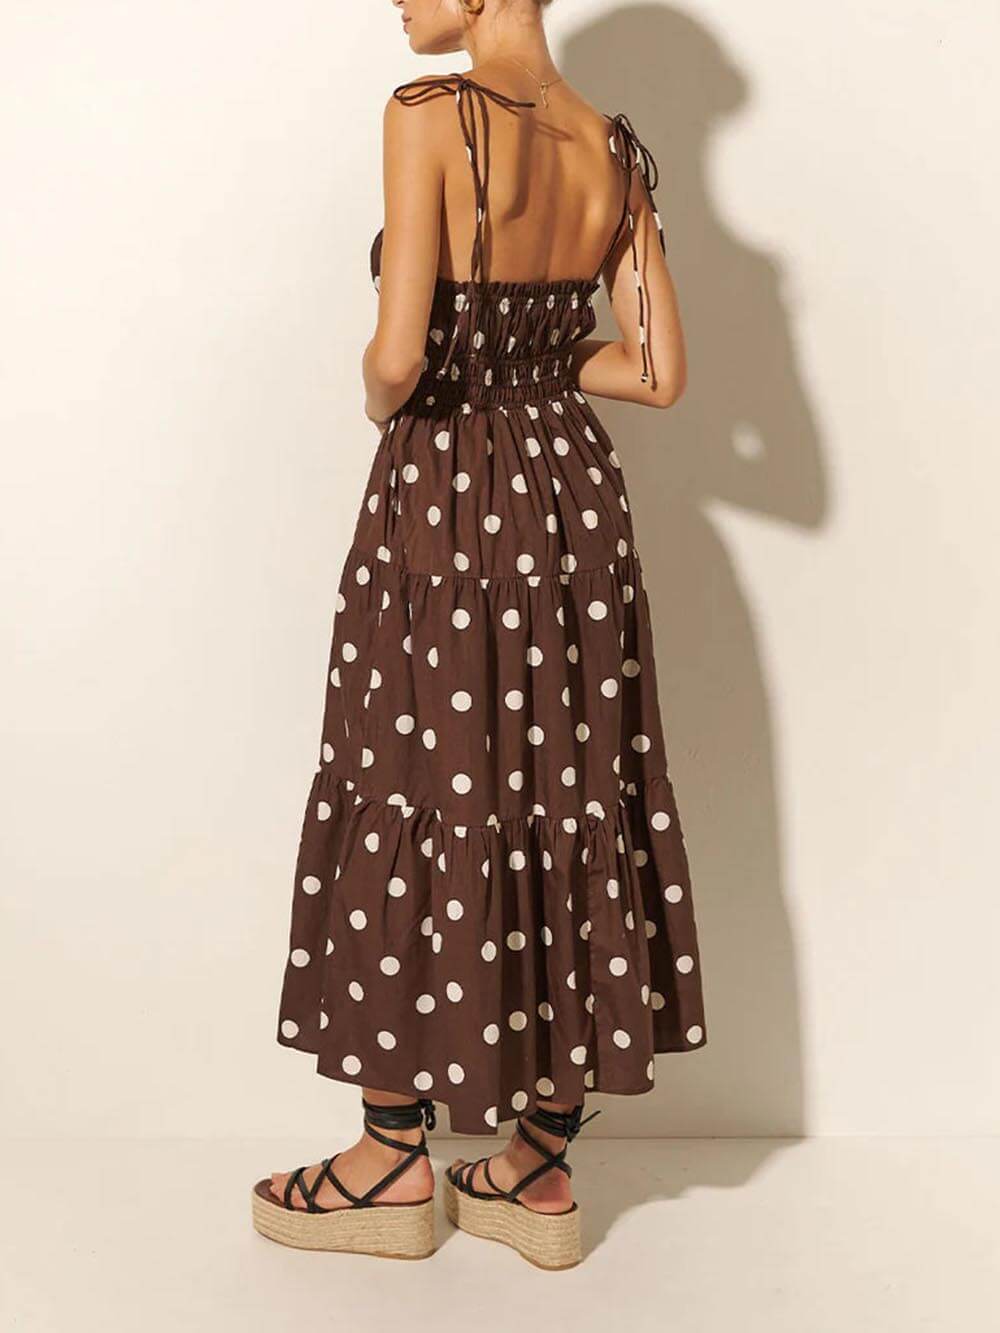 Kleid mit plissierten elastischen Trägern in Schokoladen- und Elfenbeinfarben mit Polka-Dot-Print